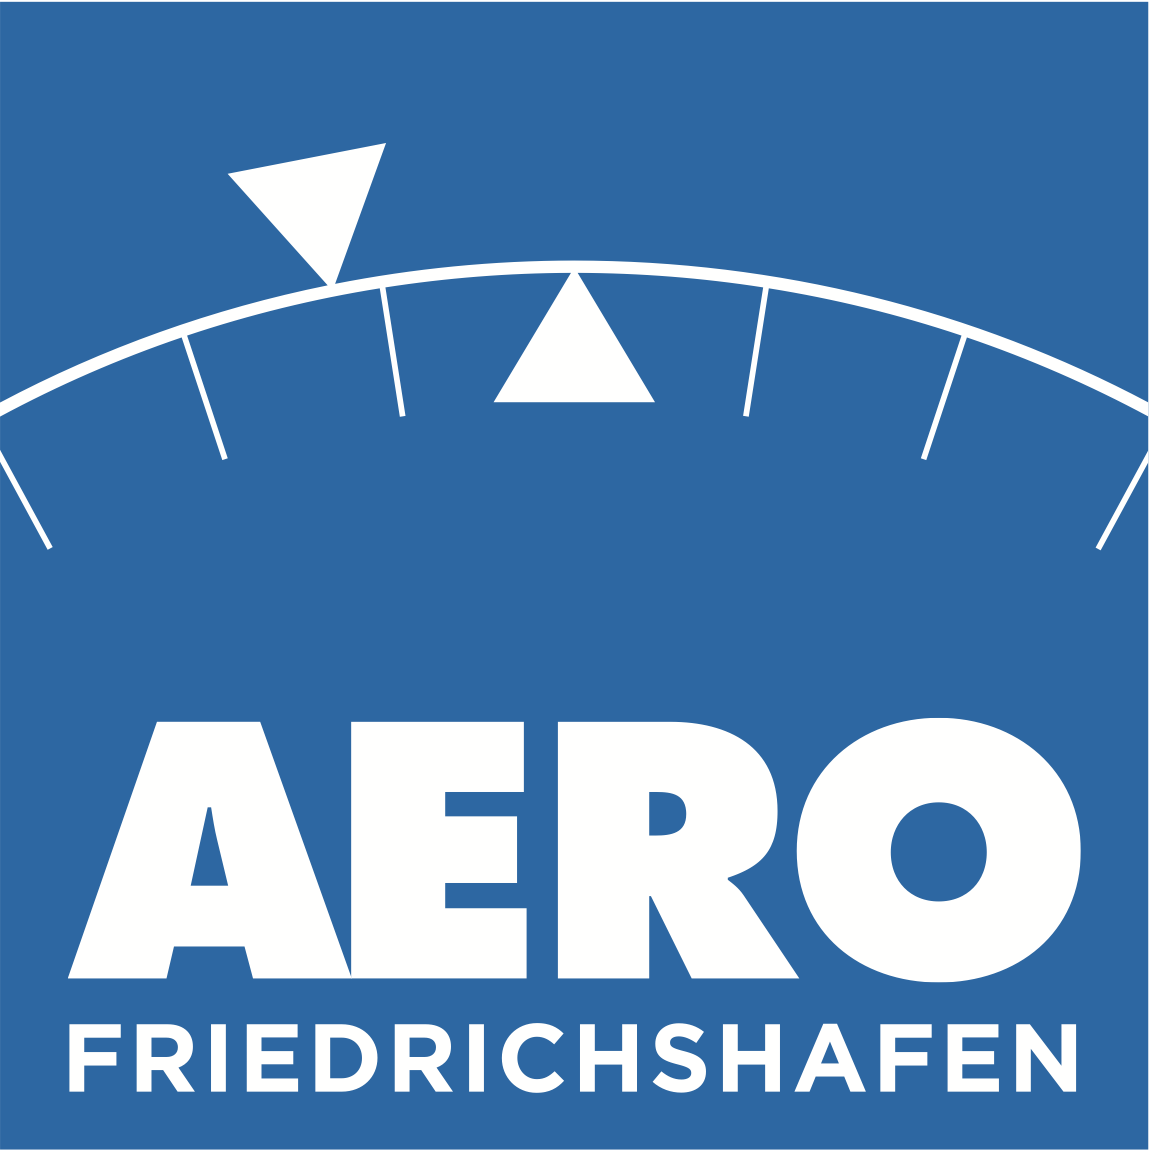 AERO Friedrichshafen